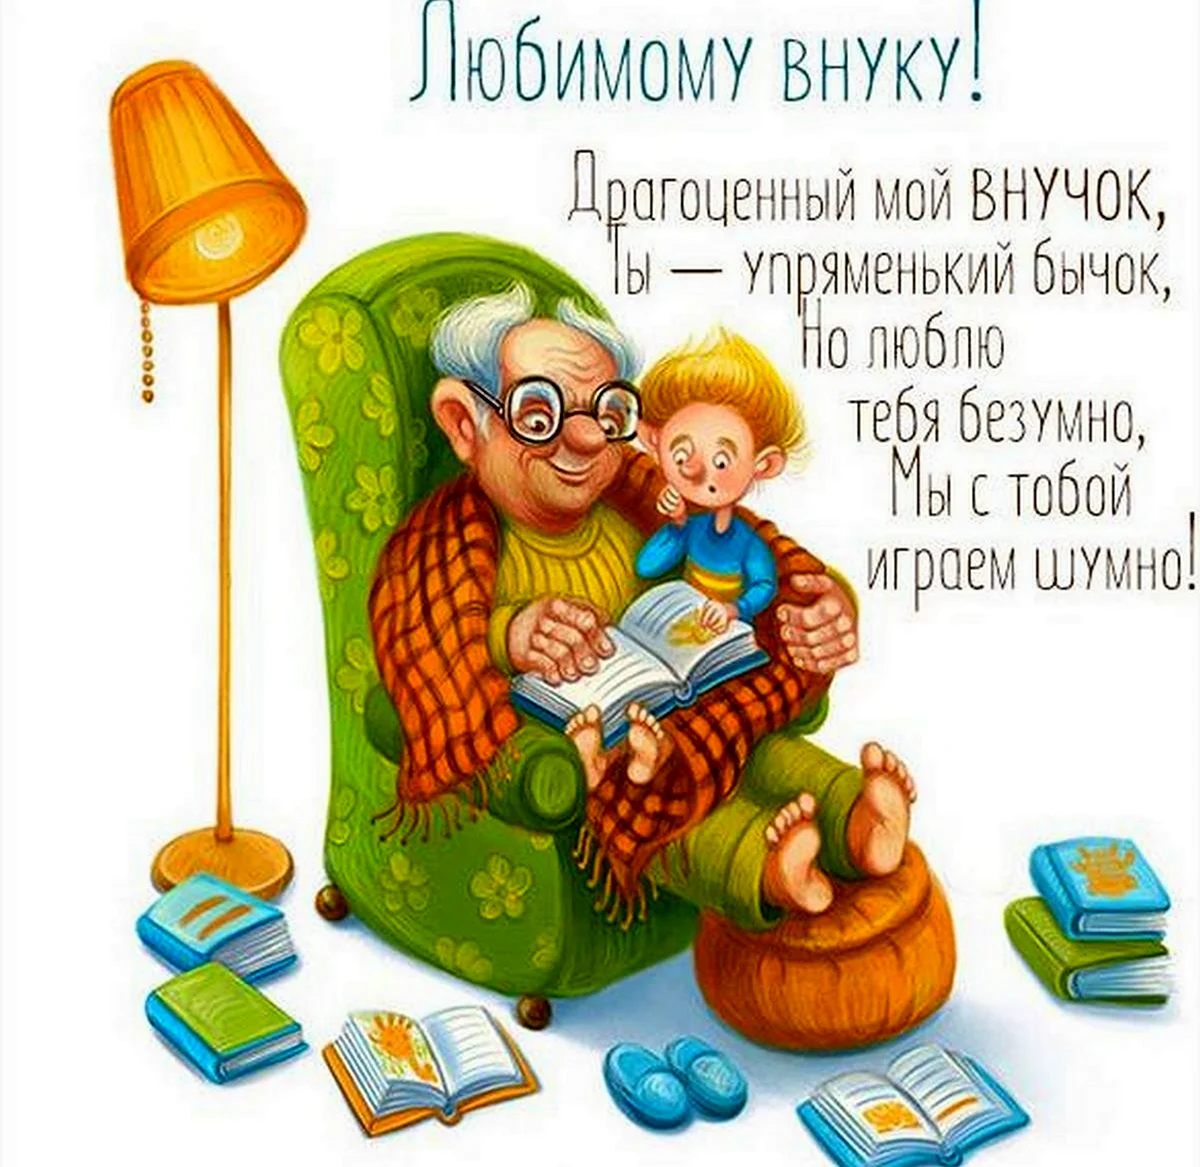 Дедушка с внучками иллюстрации. Поздравление